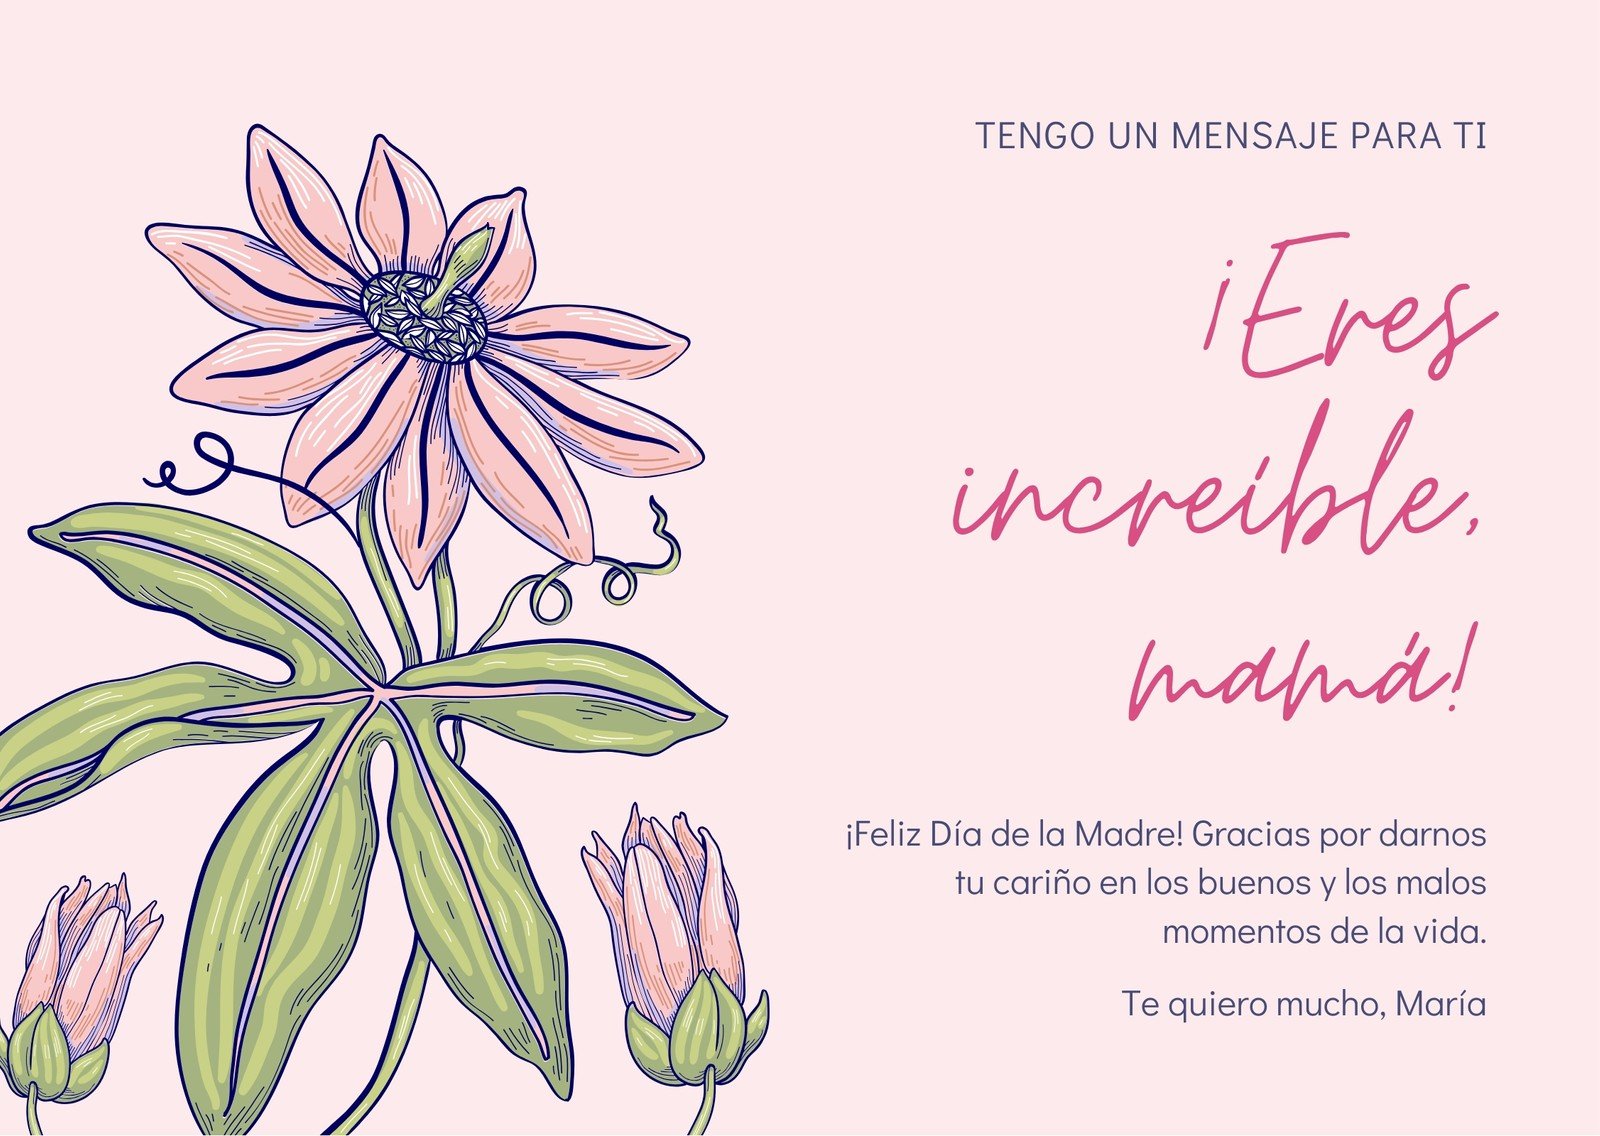 Plantillas para tarjetas del Día de las Madres gratis | Canva